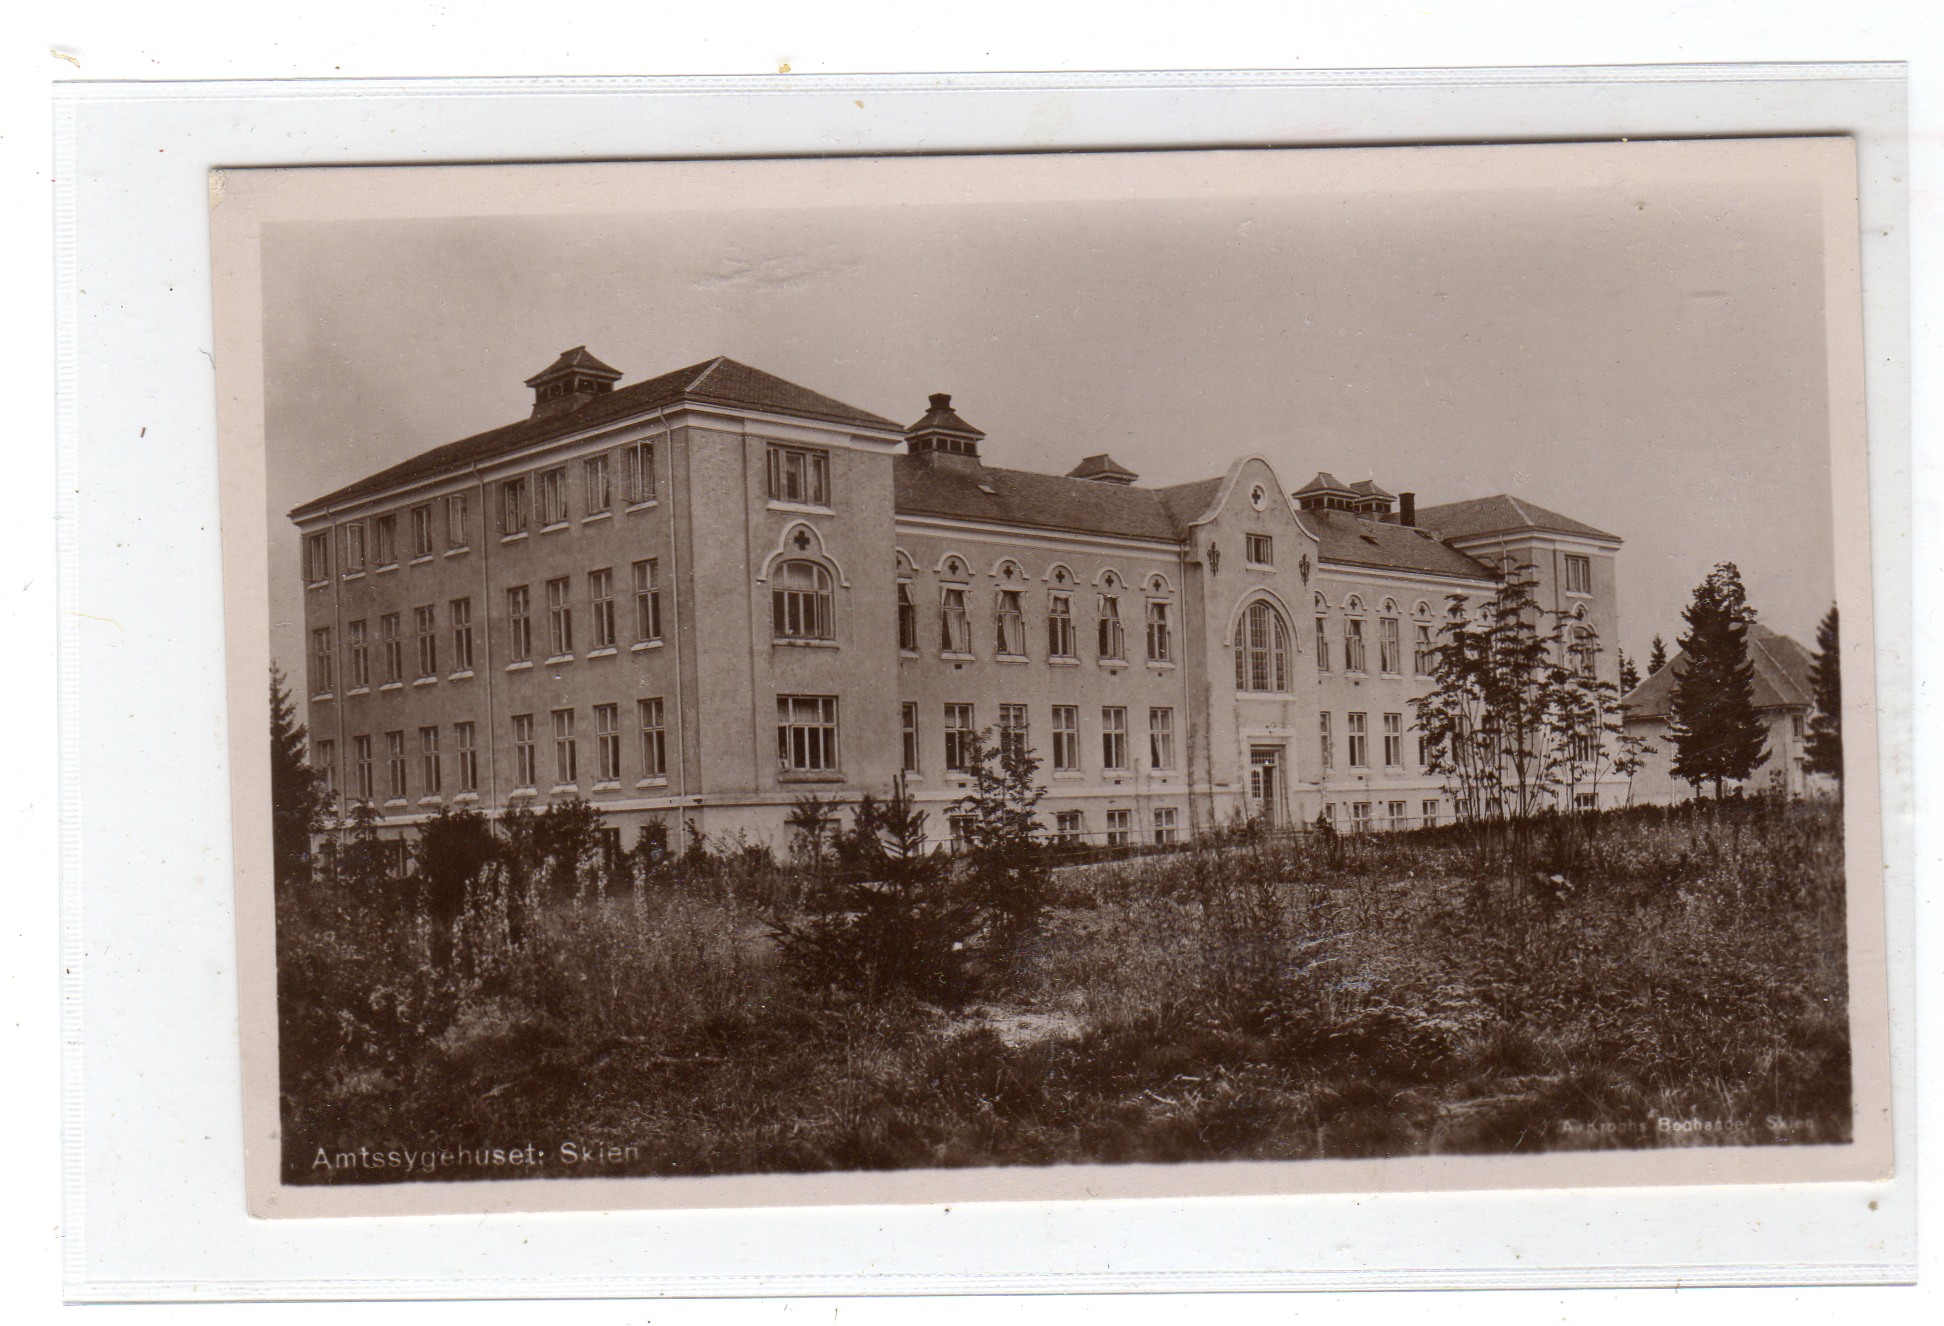 Amtsykehuset Skien Krogh